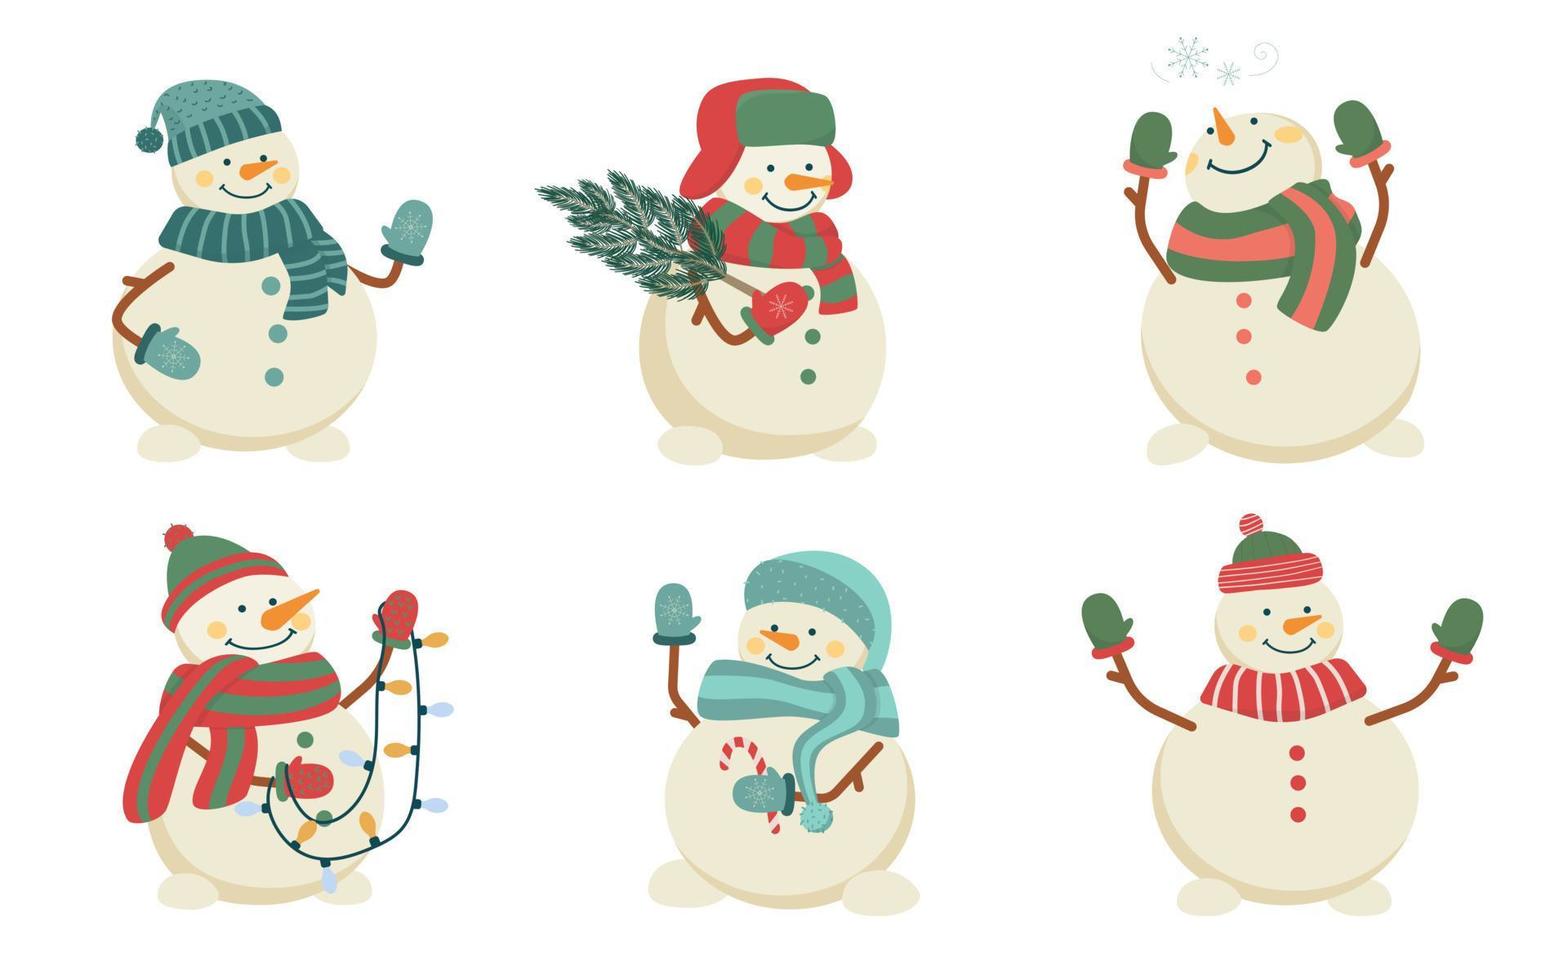 impostato di carino Natale pupazzi di neve nel cappelli e sciarpe. collezione di divertente personaggi. isolato piatto vettore illustrazione.